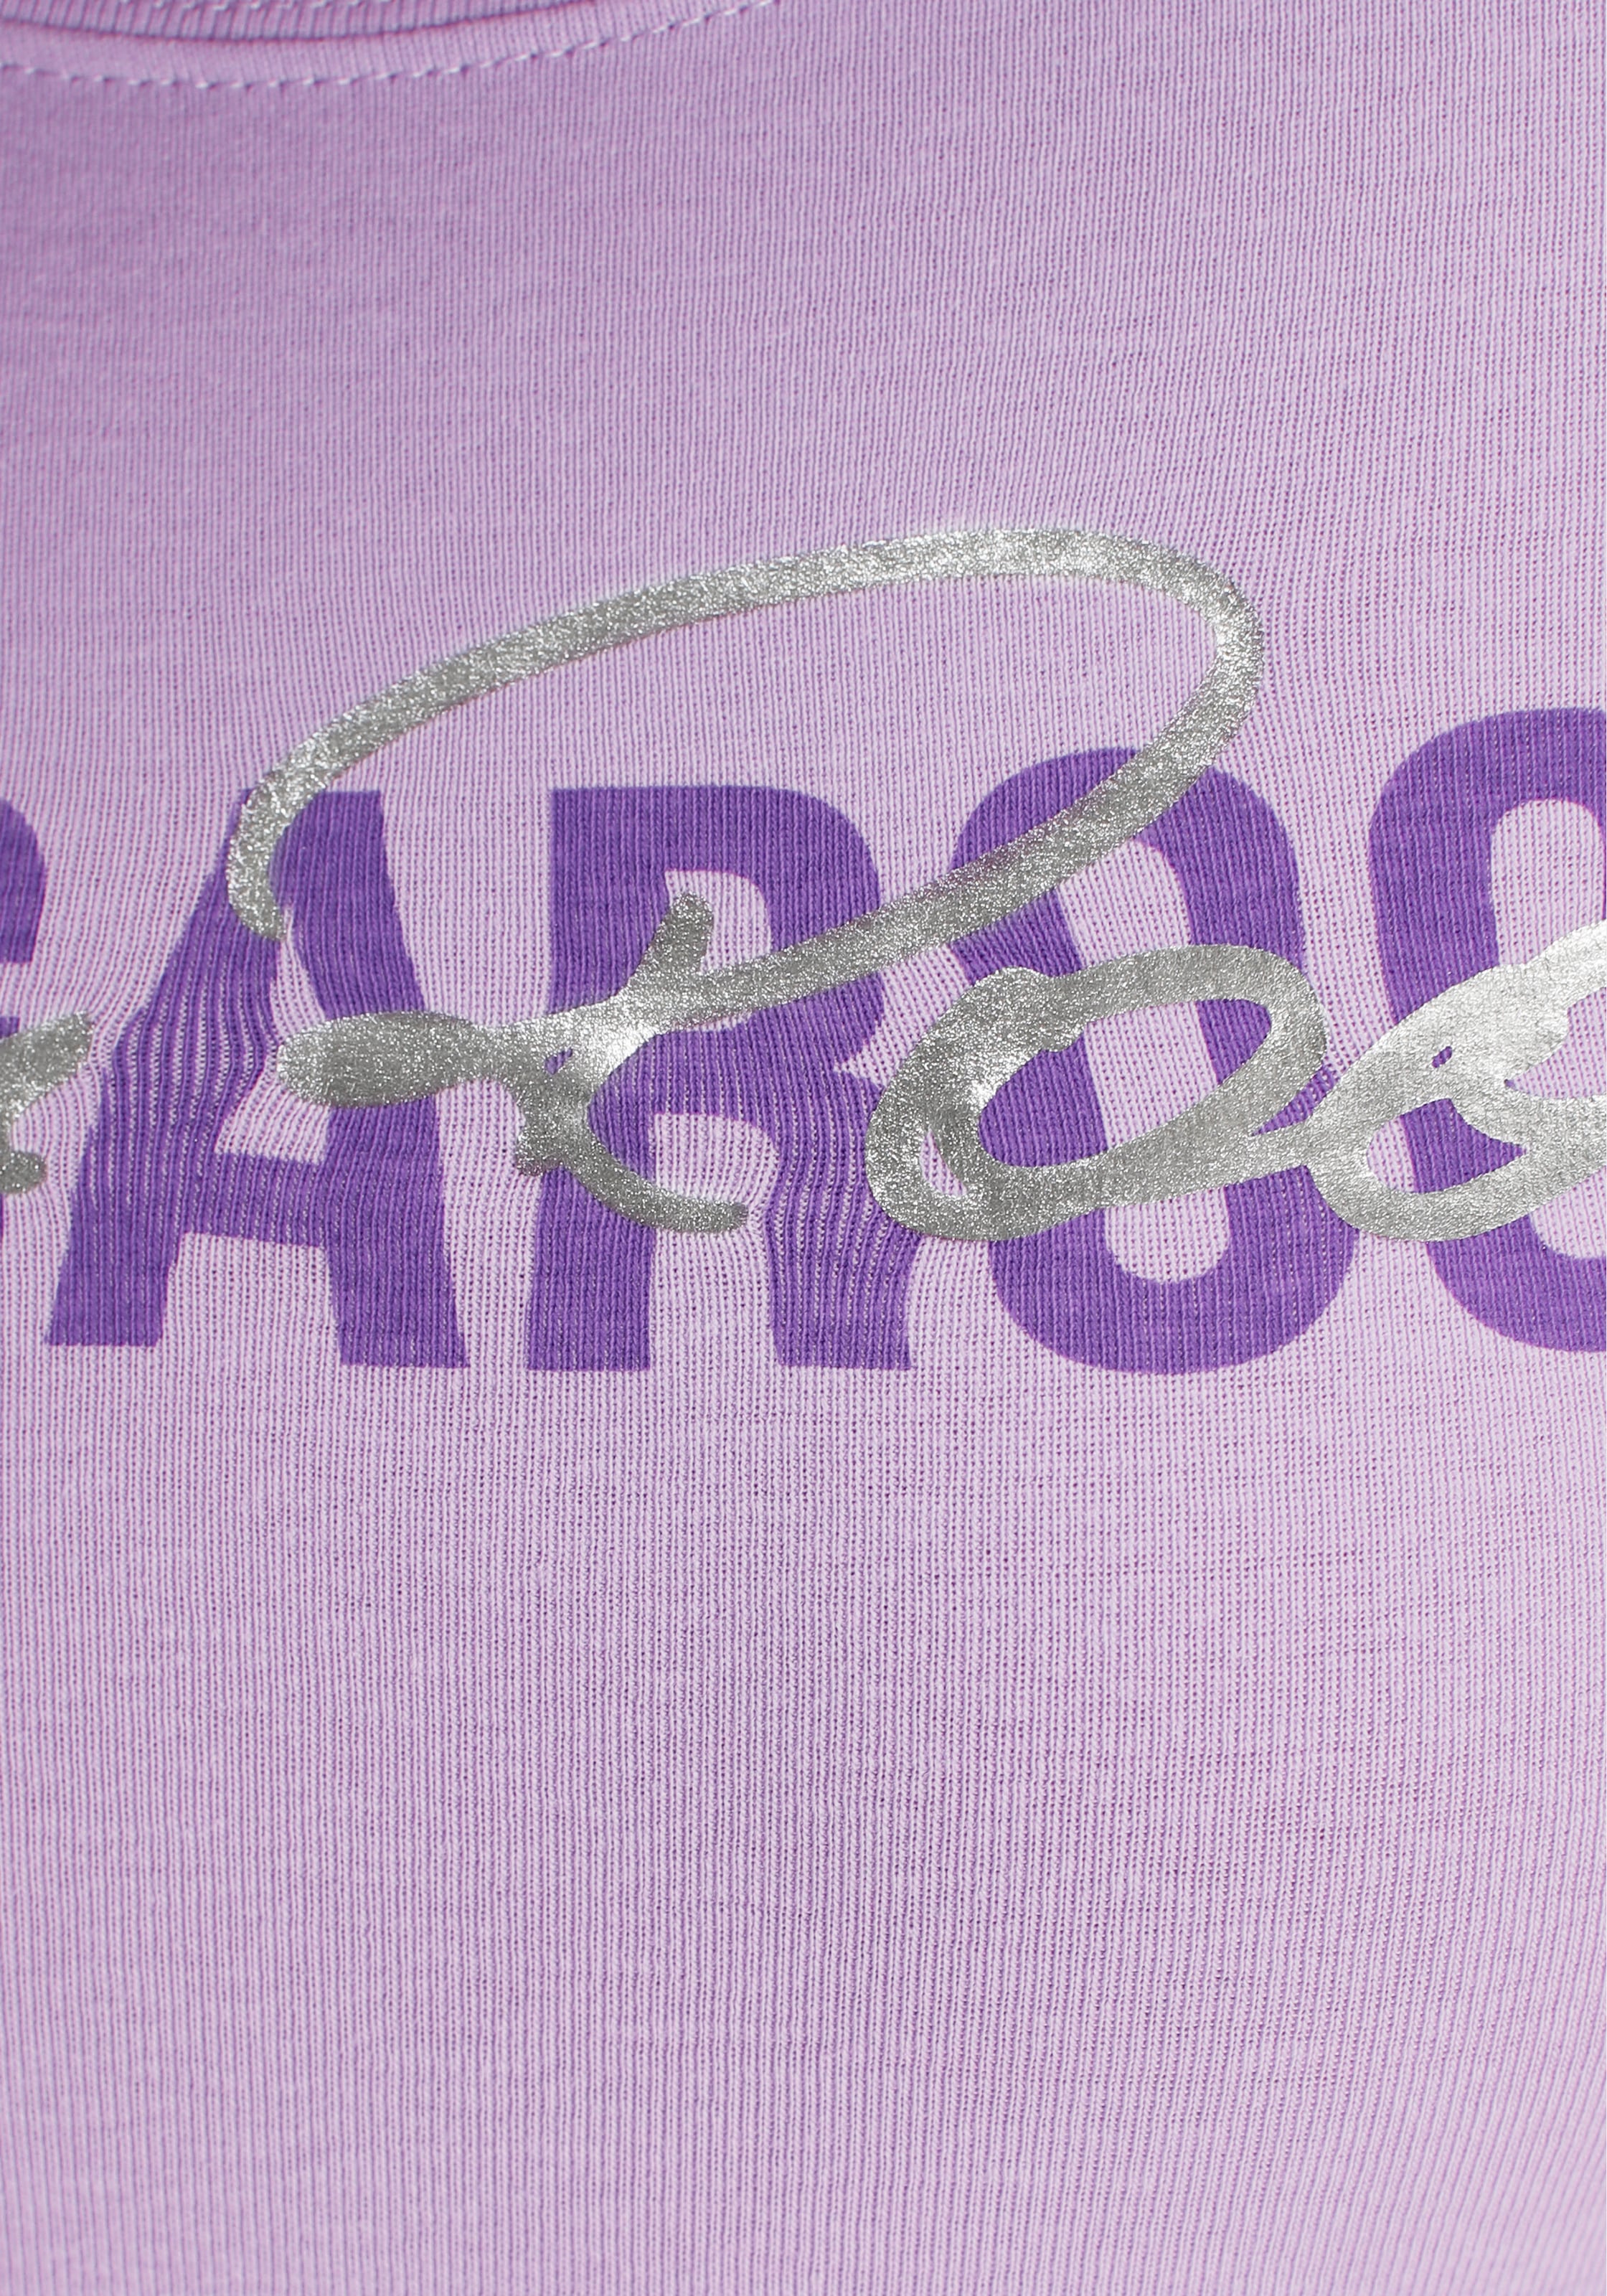 KangaROOS Langarmshirt, zum Krempeln mit collem Logodruck